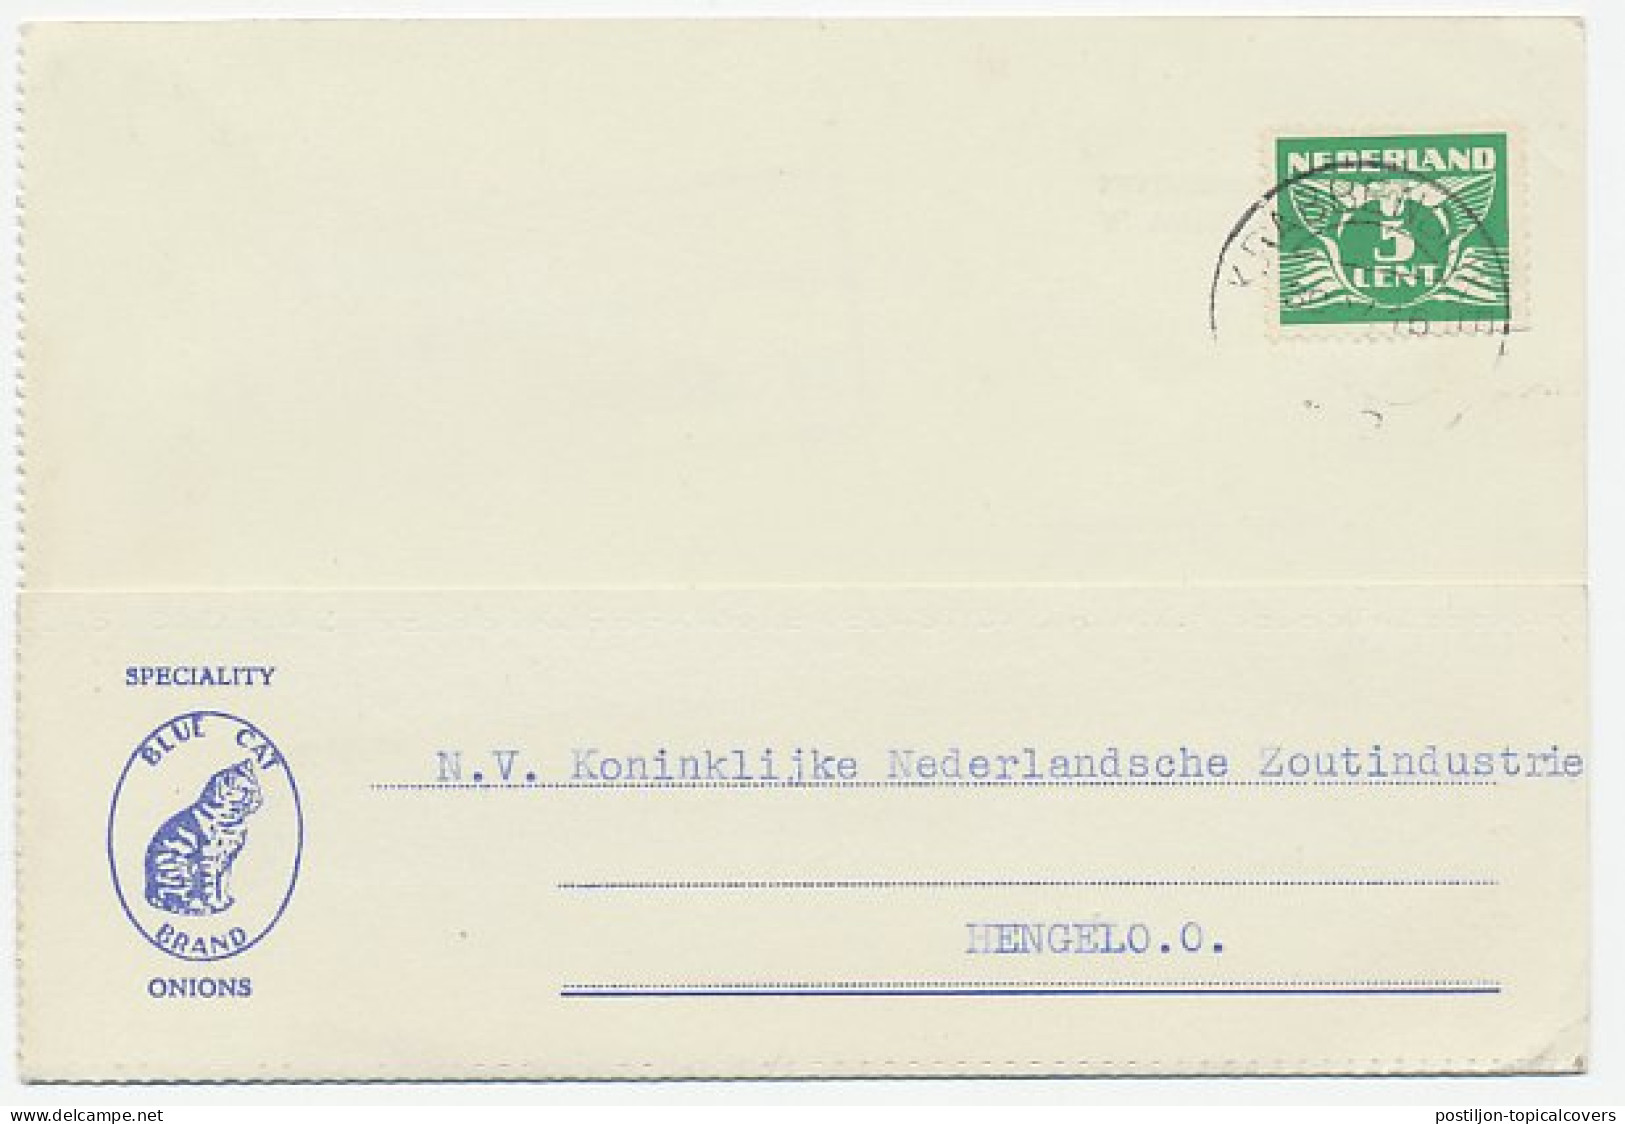 Firma Briefkaart Krabbendijke 1942 - Kat - Unclassified